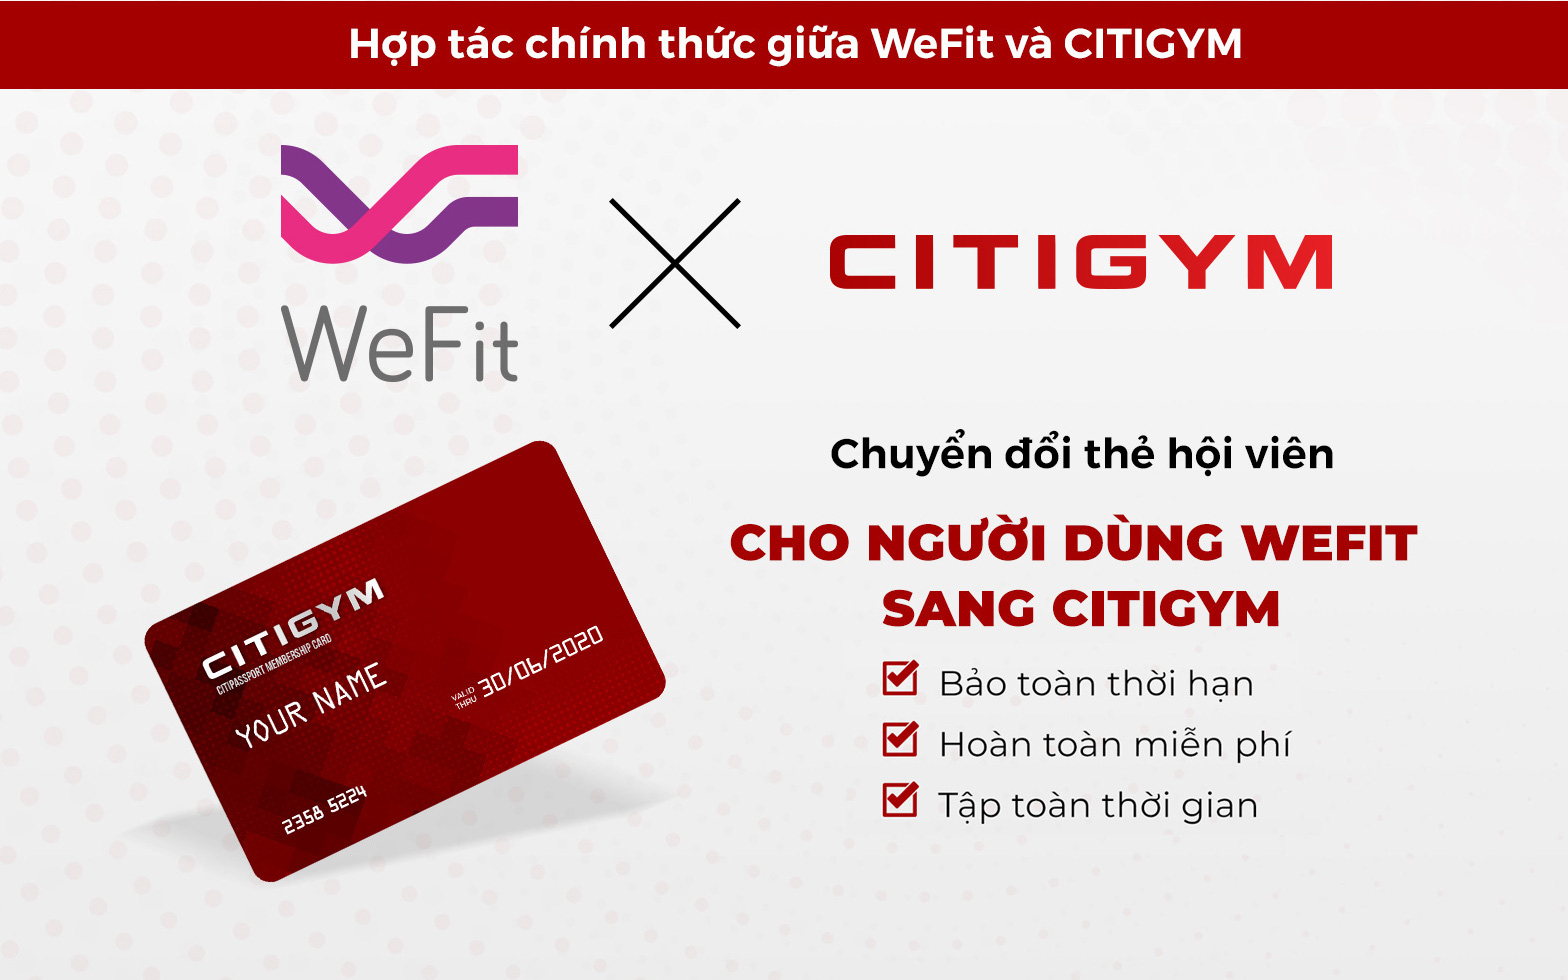 WeFit đã công bố Citigym là hệ thống chính thức hỗ trợ khách hàng của mình tại TP. Hồ Chí Minh